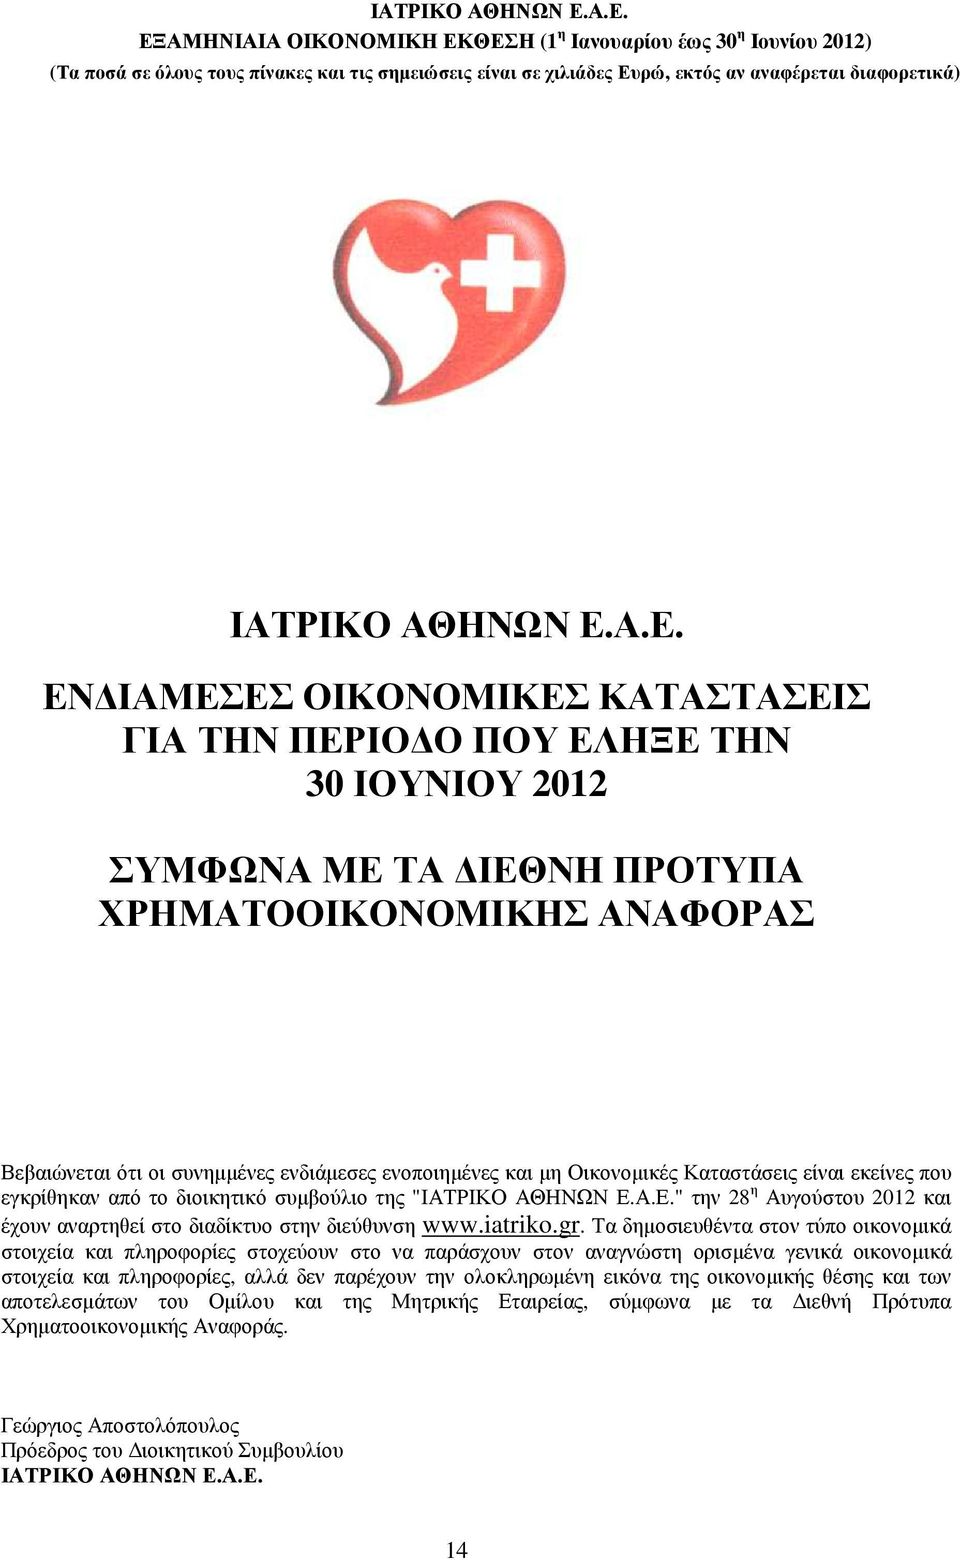 µη Οικονοµικές Καταστάσεις είναι εκείνες που εγκρίθηκαν από το διοικητικό συµβούλιο της "Α.Ε." την 28 η Αυγούστου 2012 και έχουν αναρτηθεί στο διαδίκτυο στην διεύθυνση www.iatriko.gr.